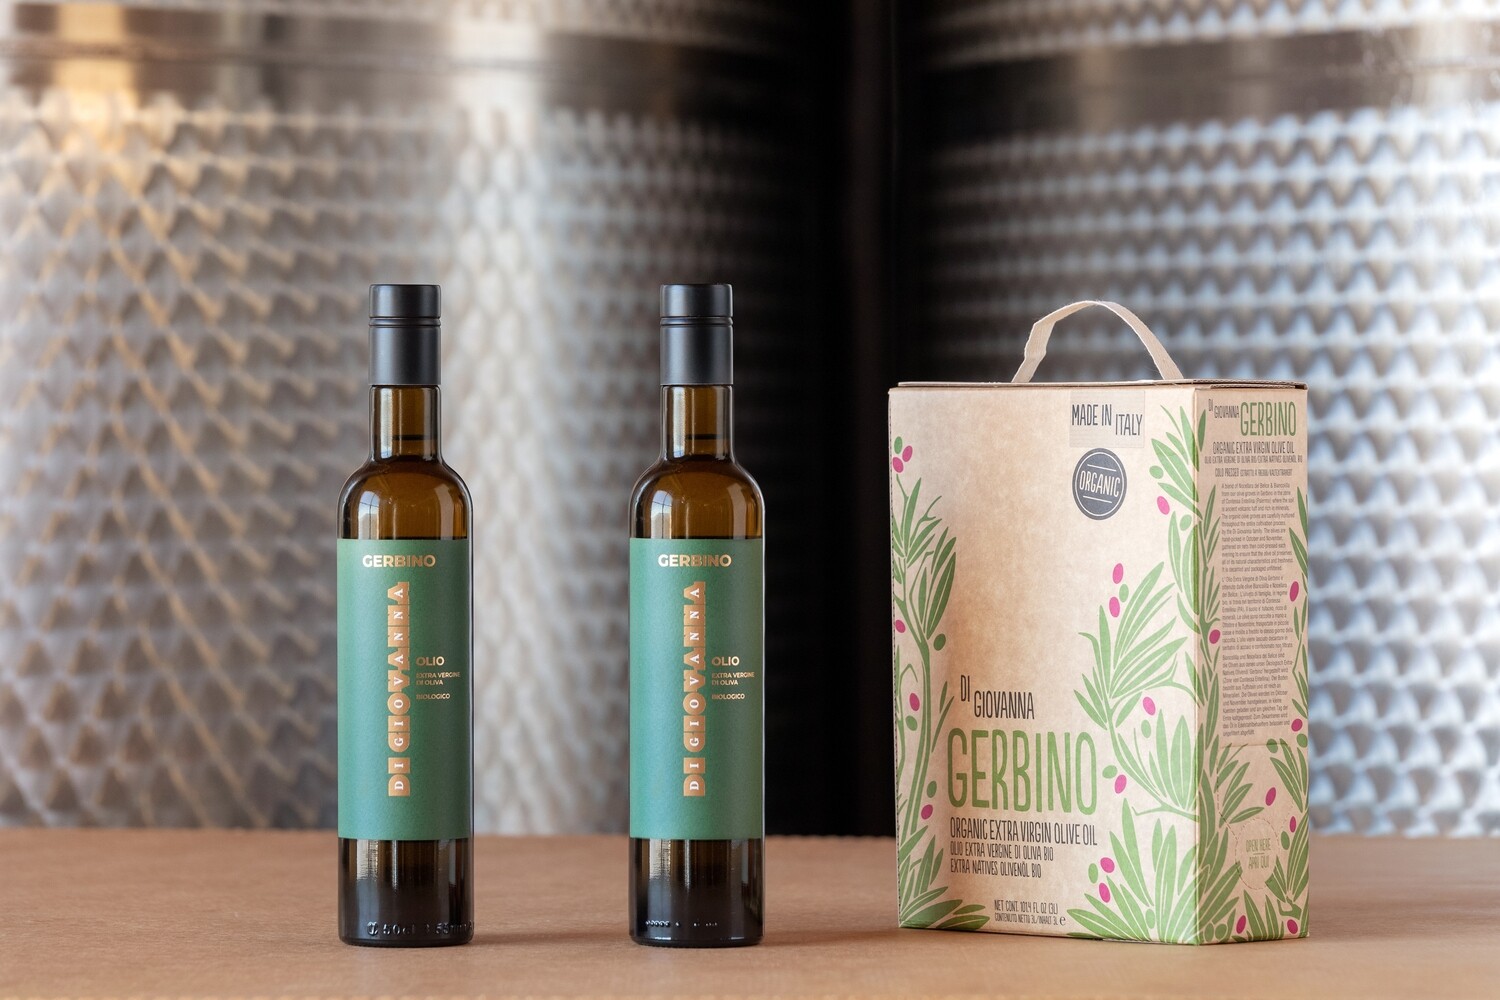 GERBINO Olio Extravergine di Oliva Biologico Box 3 Litri + 2 bottiglie (500 ml) Raccolta 2021